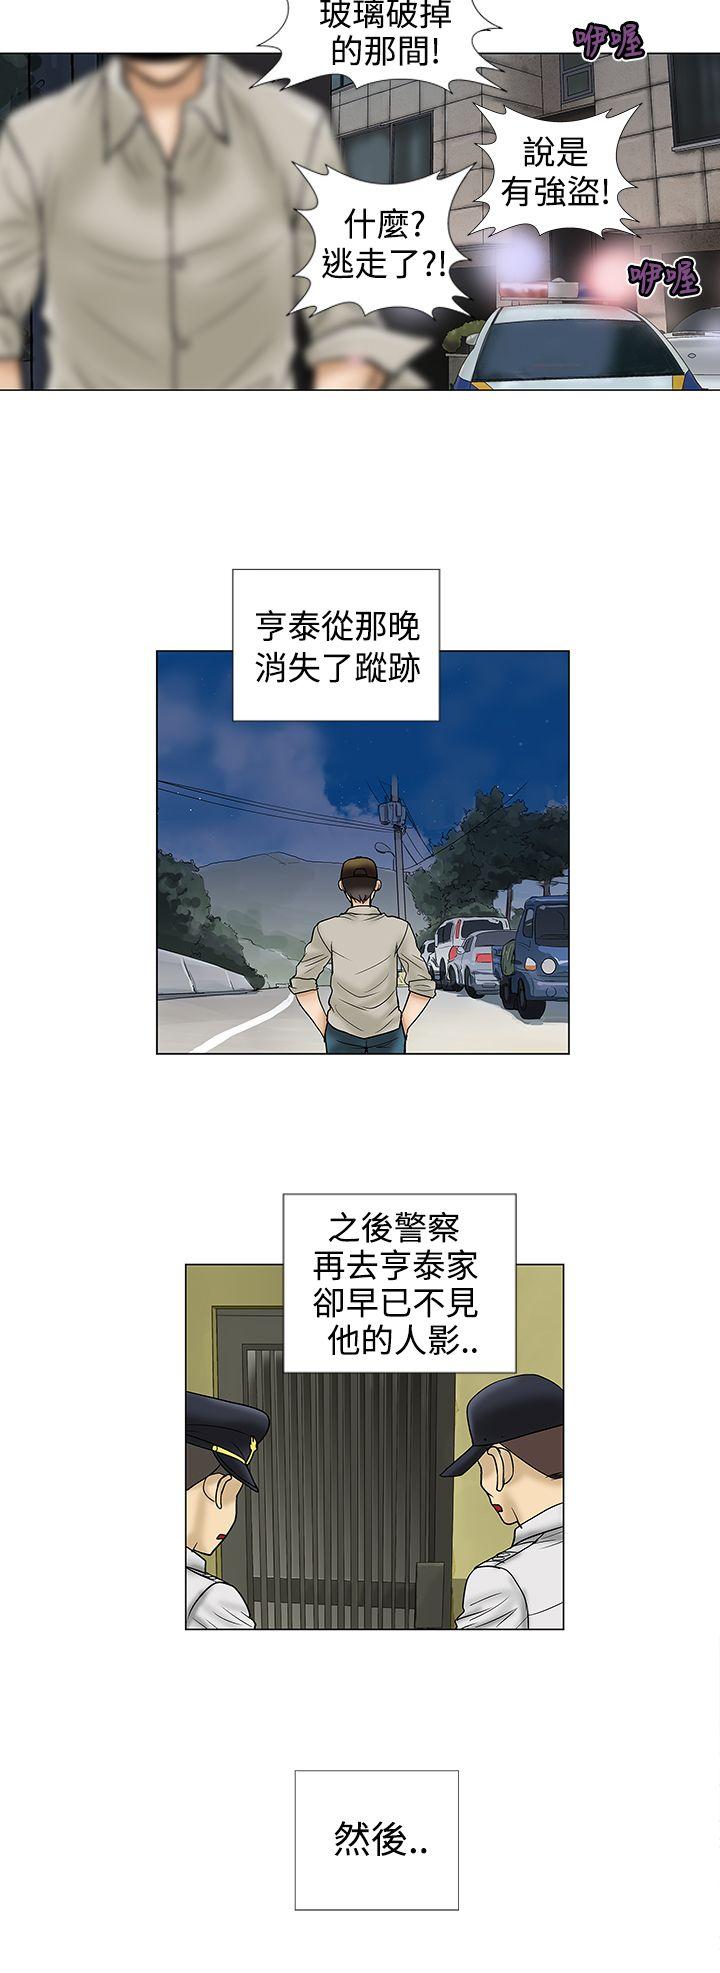 危险的爱(完结)  第10话 漫画图片4.jpg